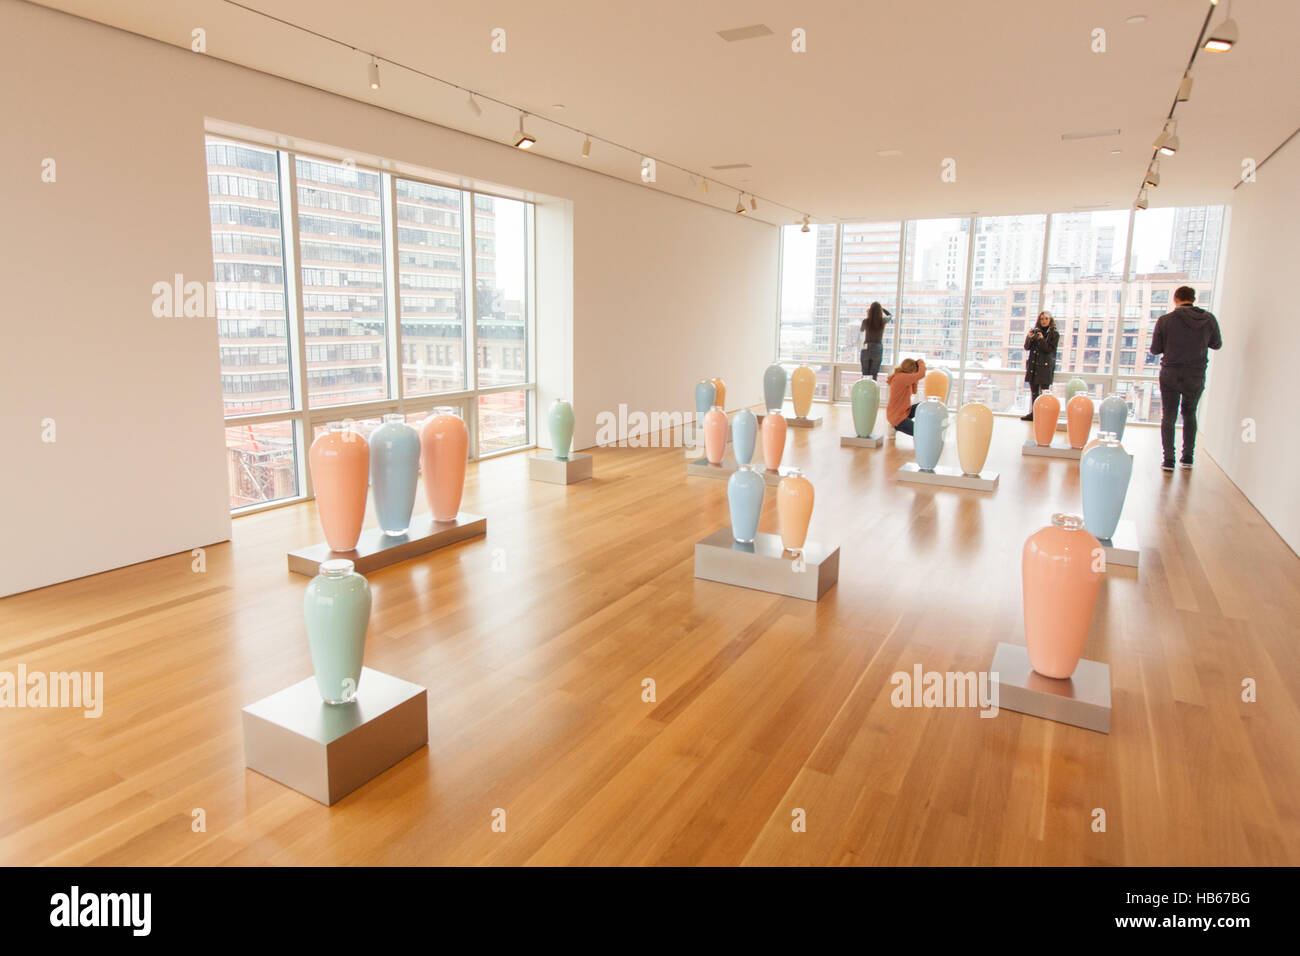 Elmgreen & Dragset Effets secondaires aux Pavillon Art Foundation Gallery, Chelsea, New York City, États-Unis d'Amérique. Banque D'Images